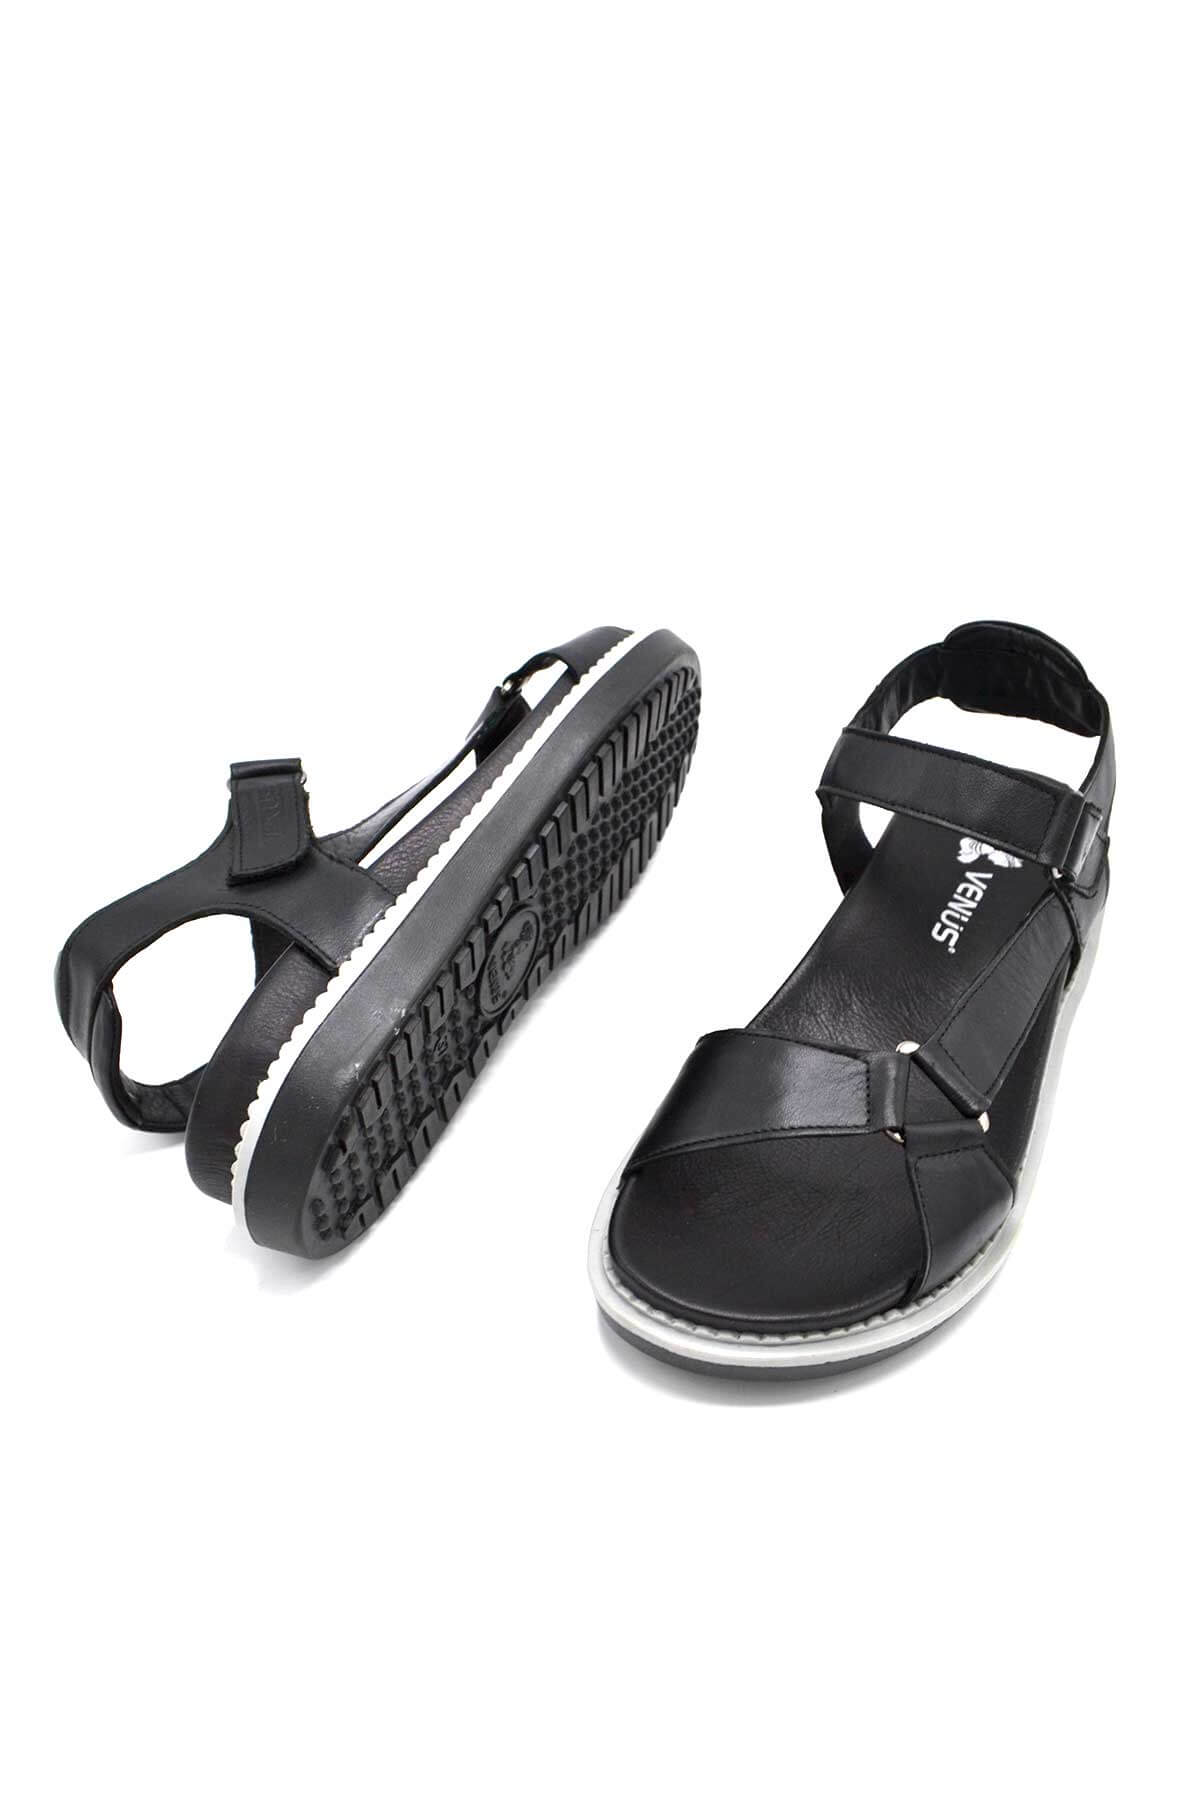 Kadın Comfort Deri Sandalet Siyah 202064Y